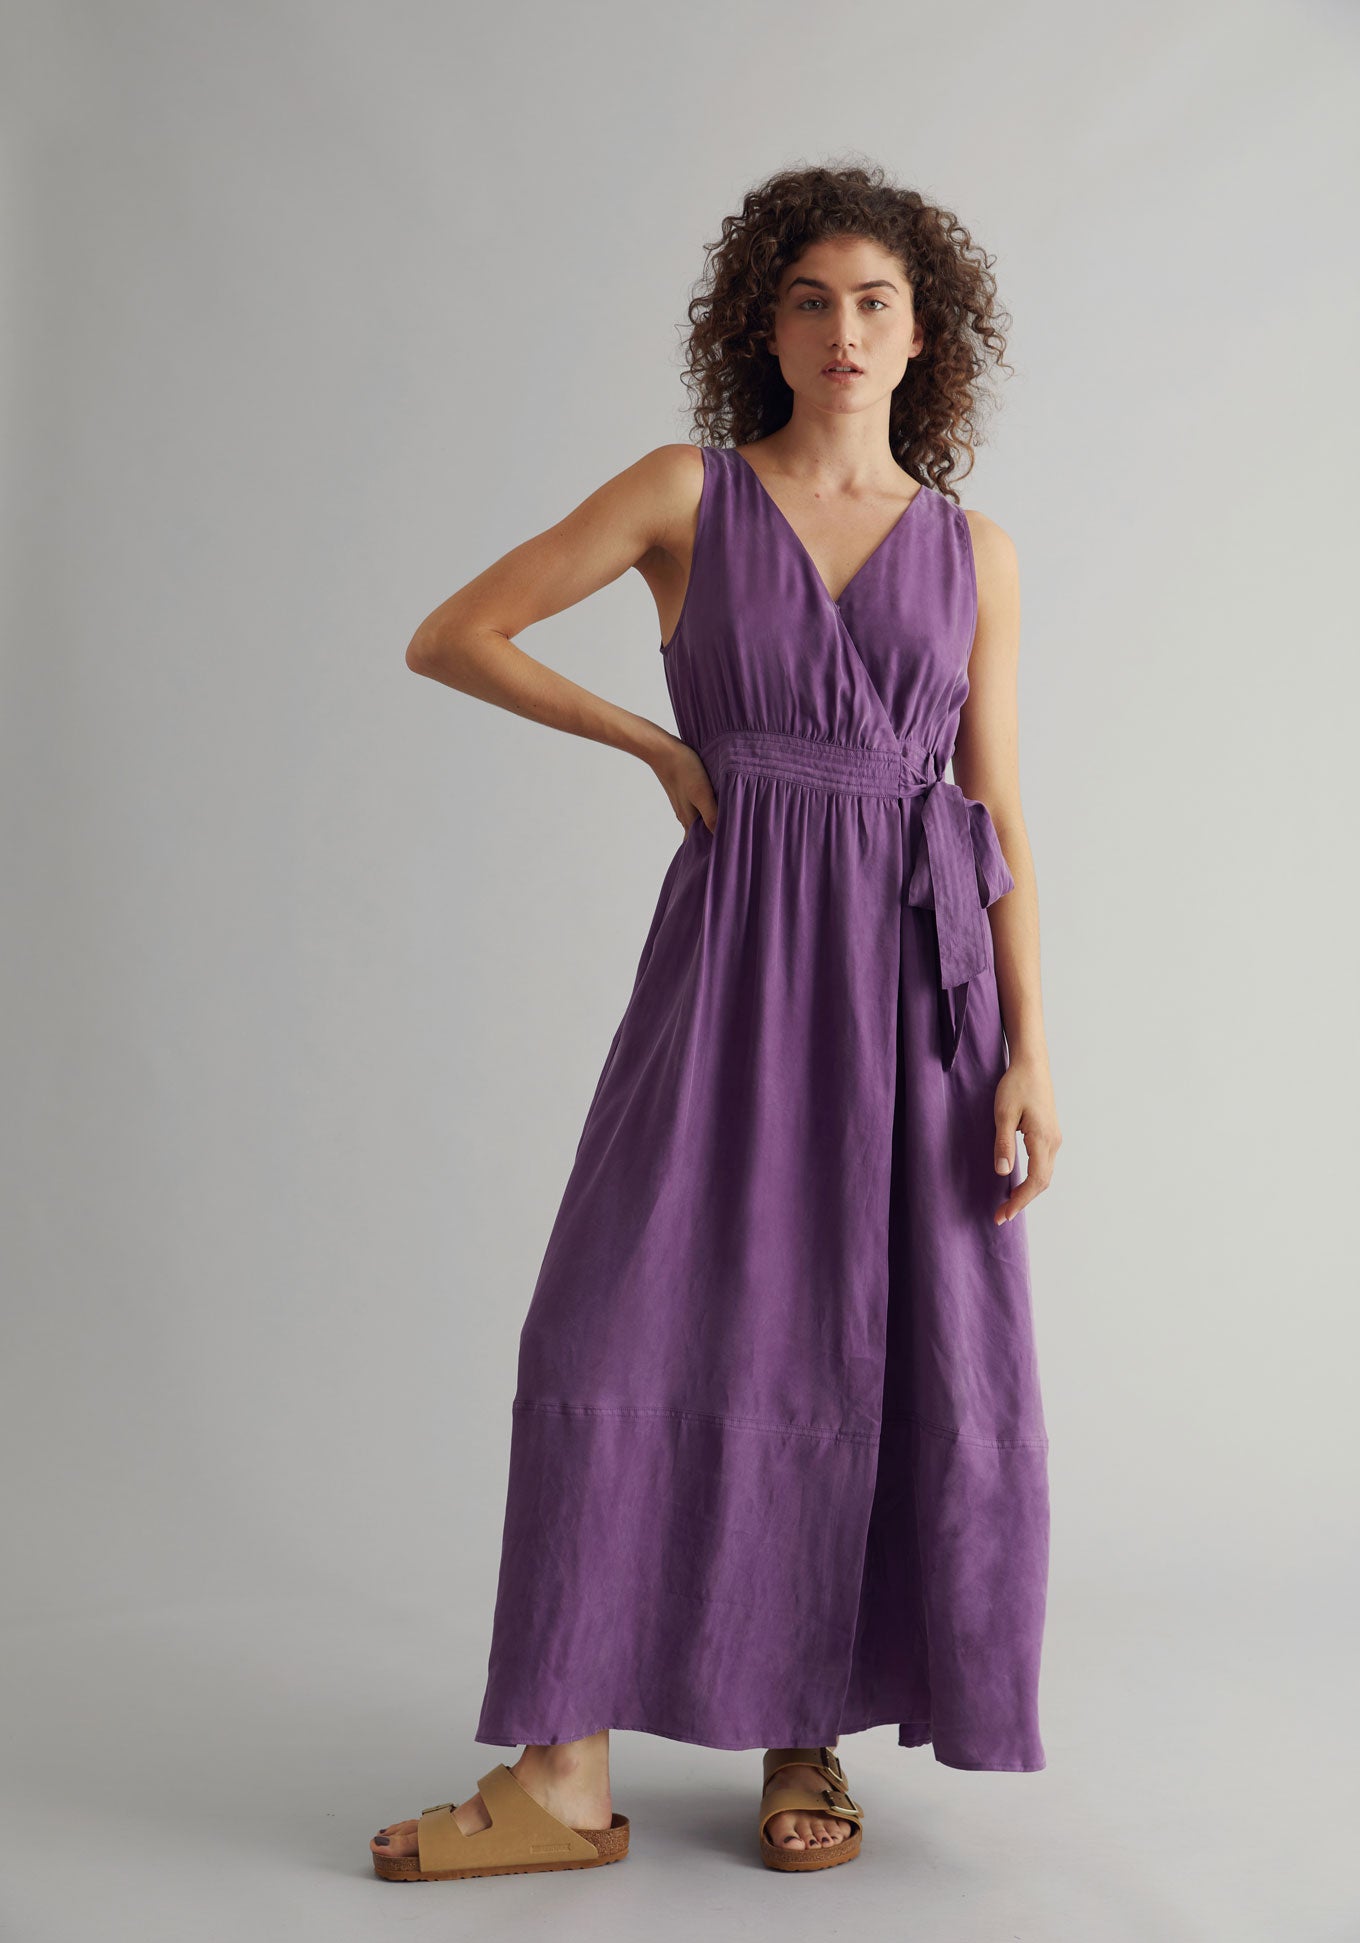 MIKA Dress - Cupro Viscose Purple, SIZE 3 / UK 12 / EUR 40